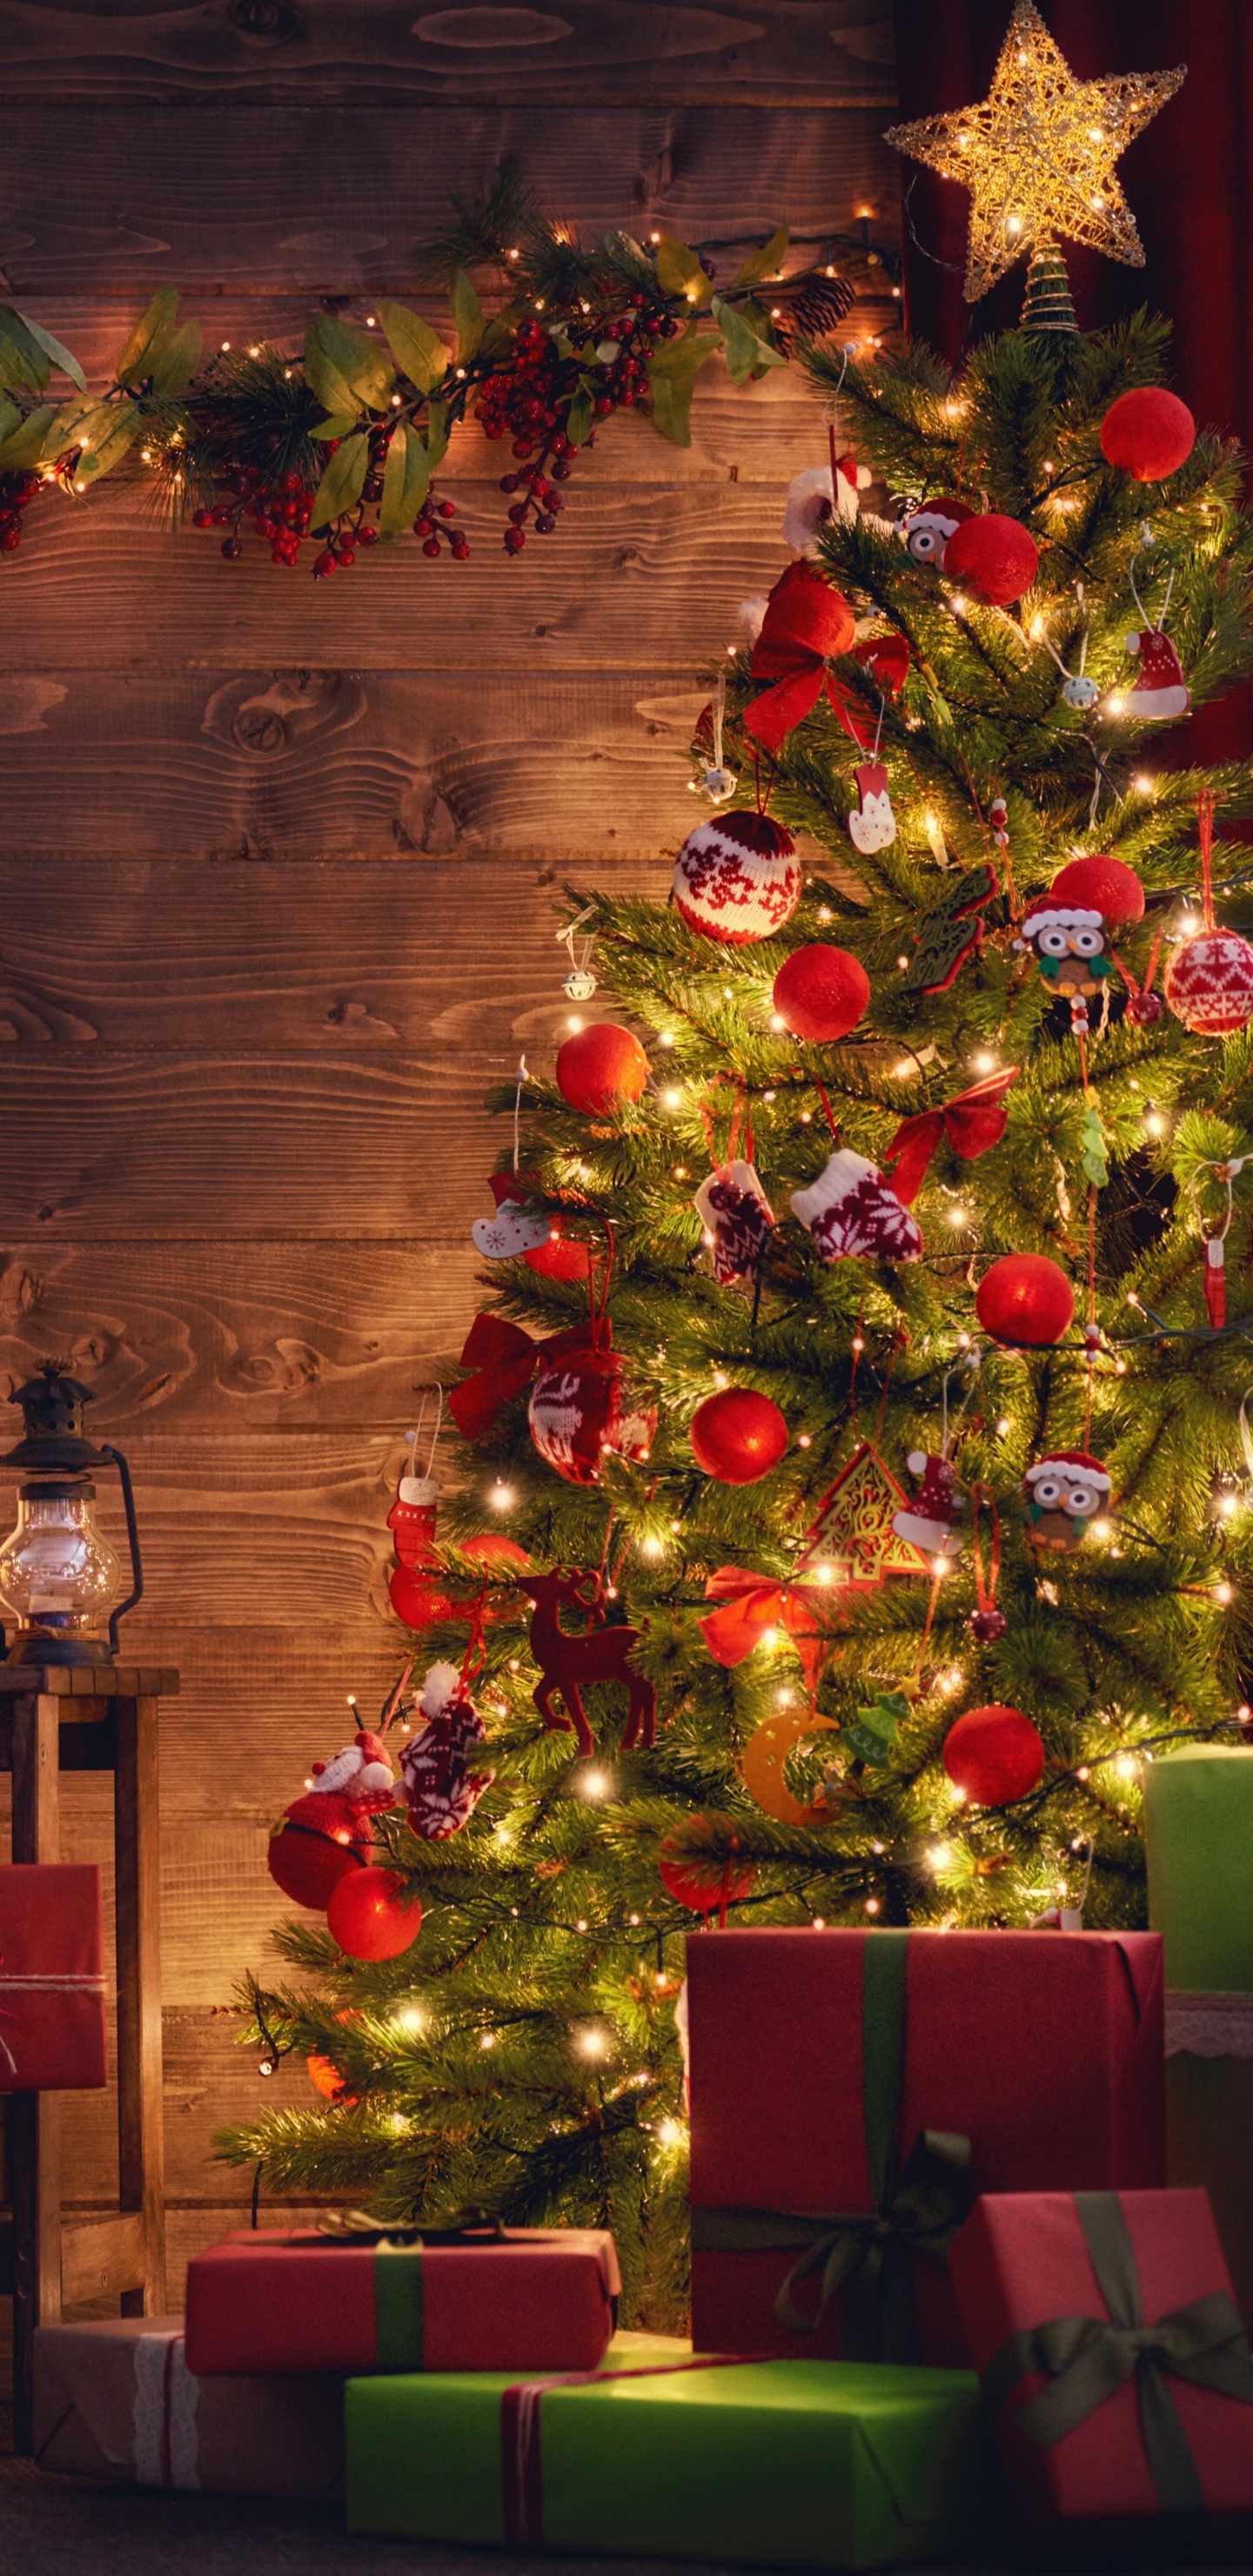 Weihnachtsbaum, Weihnachten, Weihnachtsdekoration, Weihnachtsbeleuchtung, Hölzerner Weihnachts-Adventskalender. Wallpaper in 1440x2960 Resolution